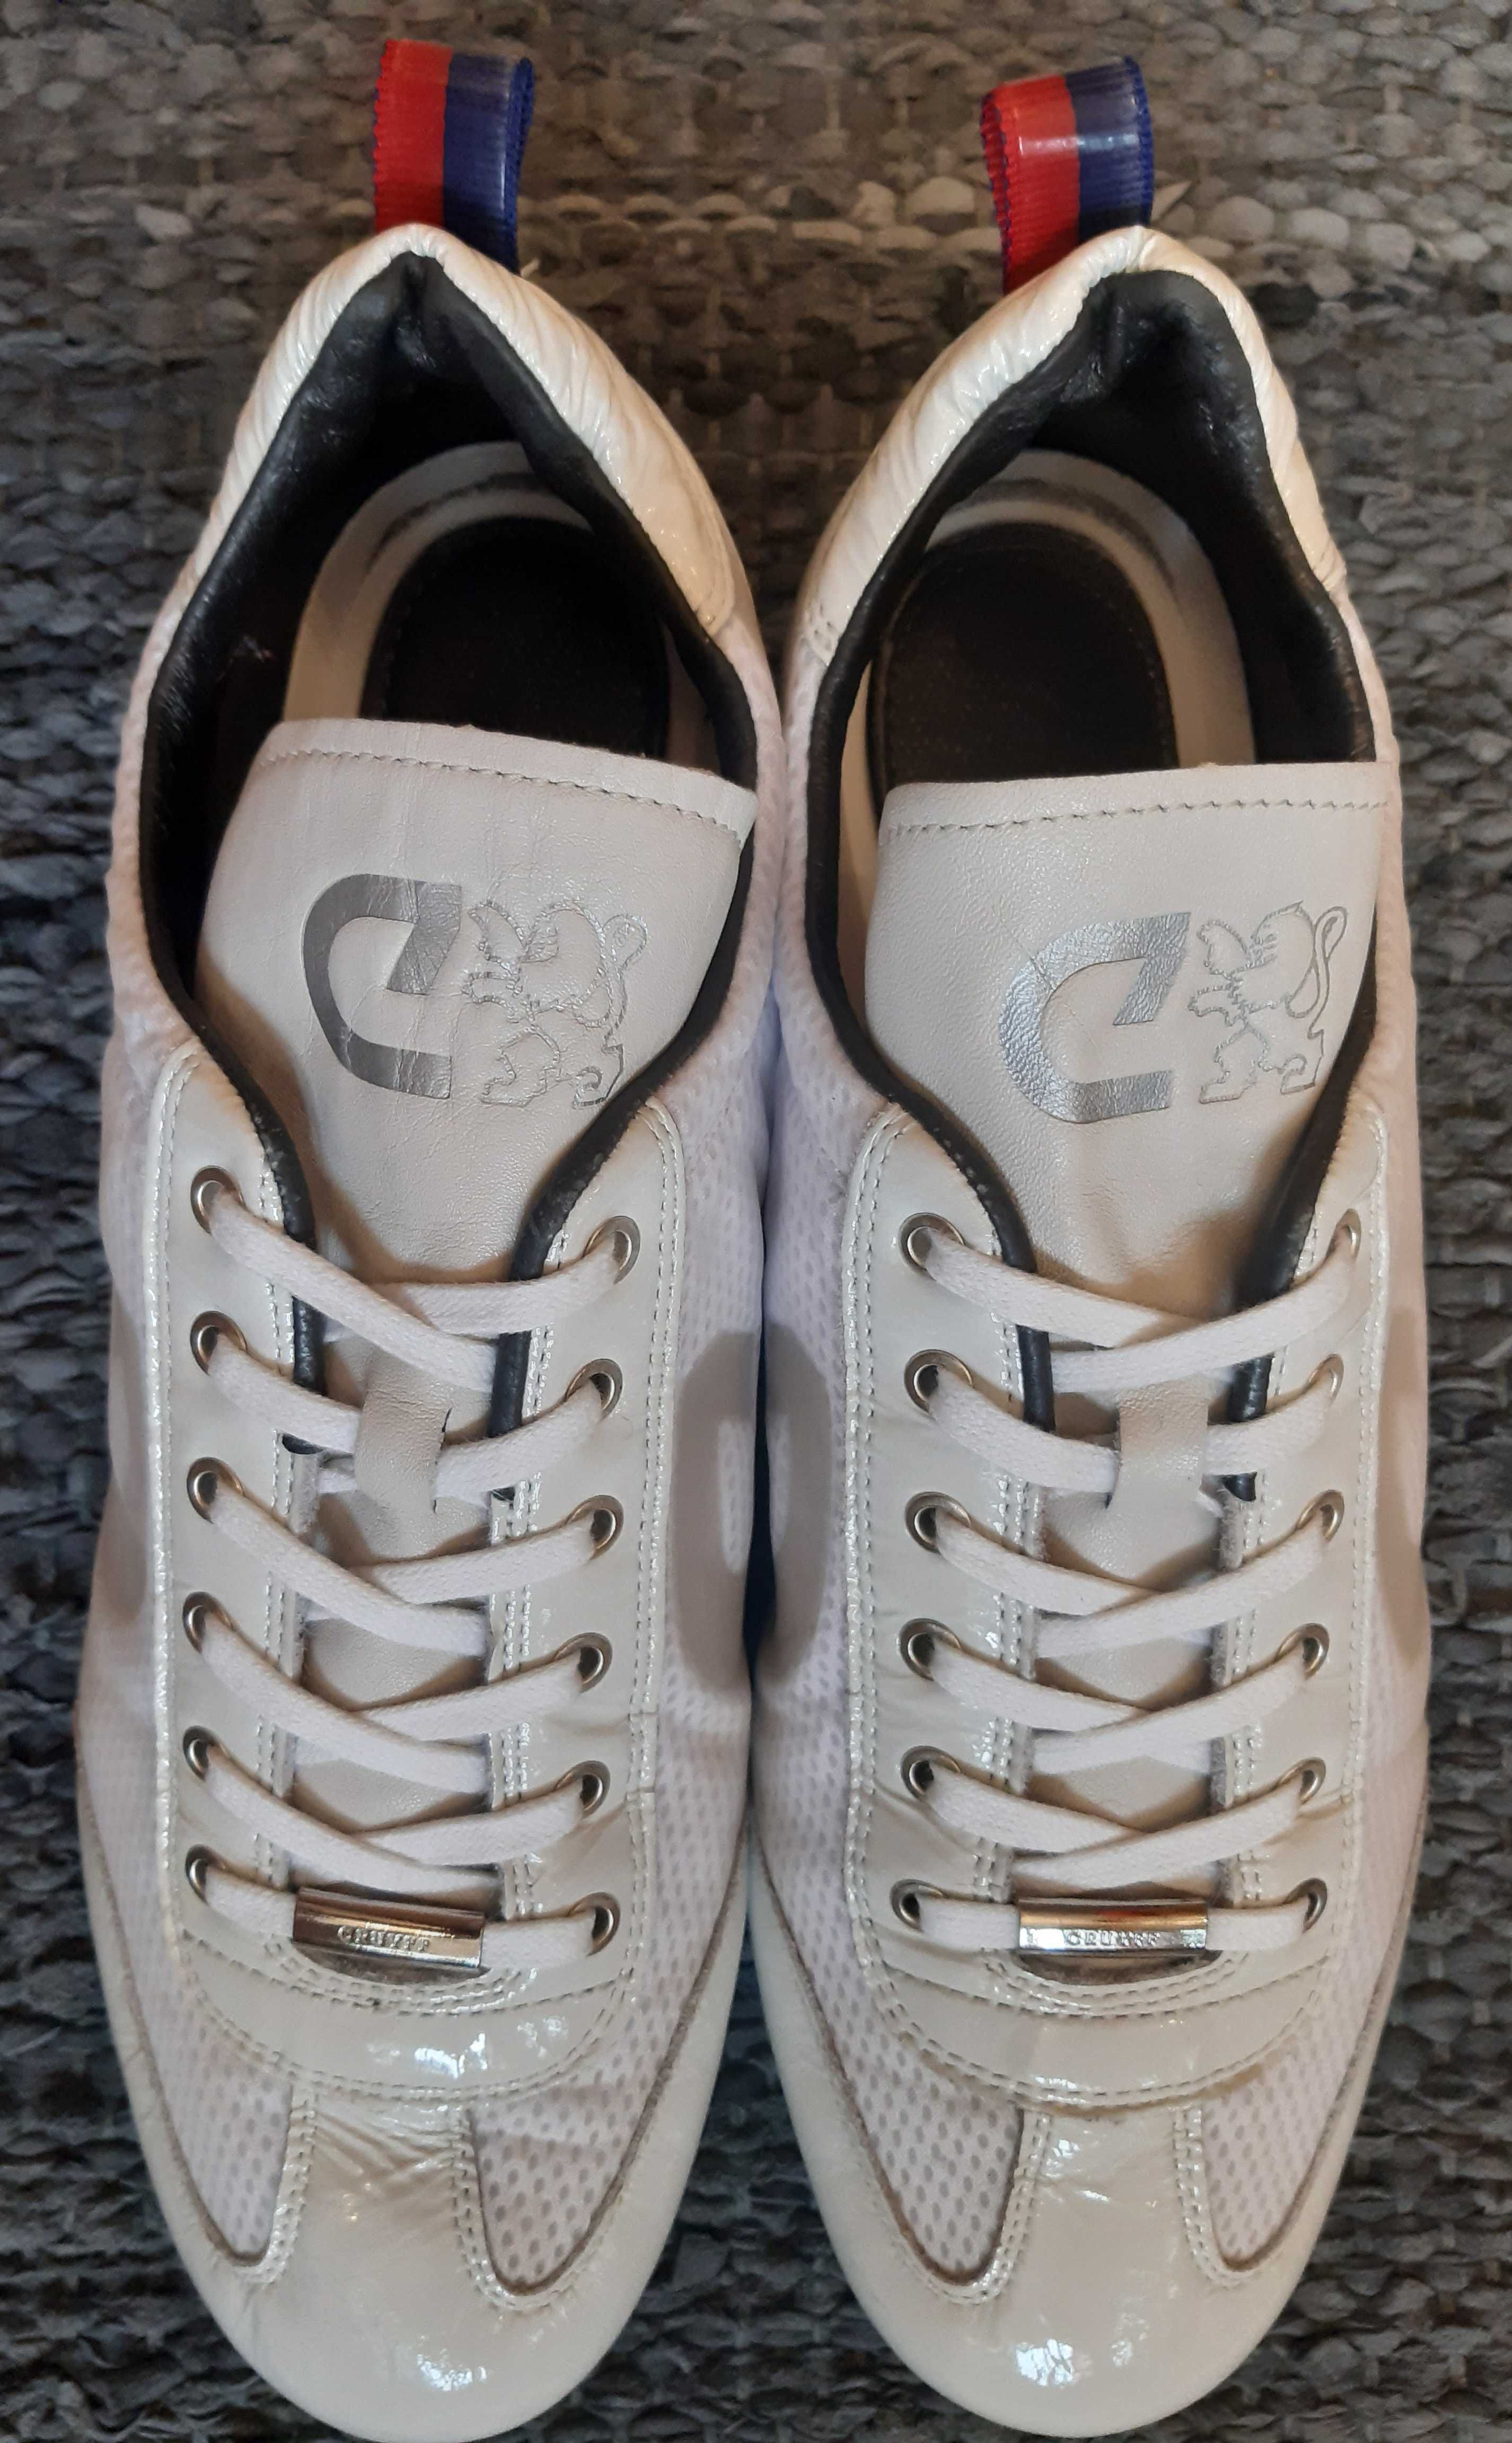 Skórzane białe sneakersy Cruyff rozmiar 44